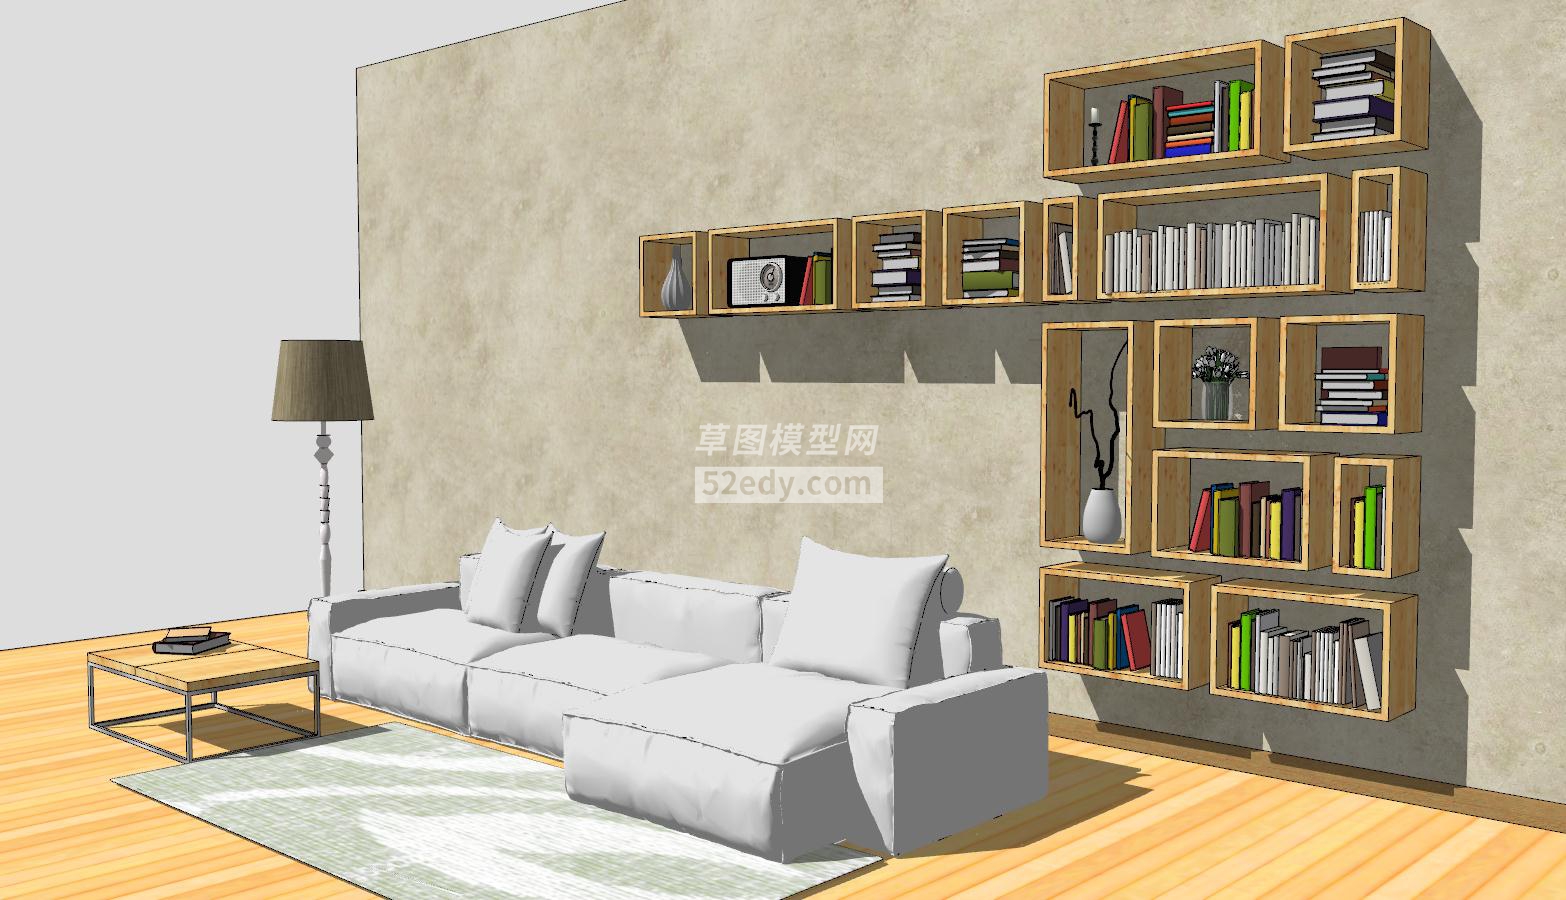 客厅休闲风格家具设计SU模型QQ浏览器截图20190823095959(2)